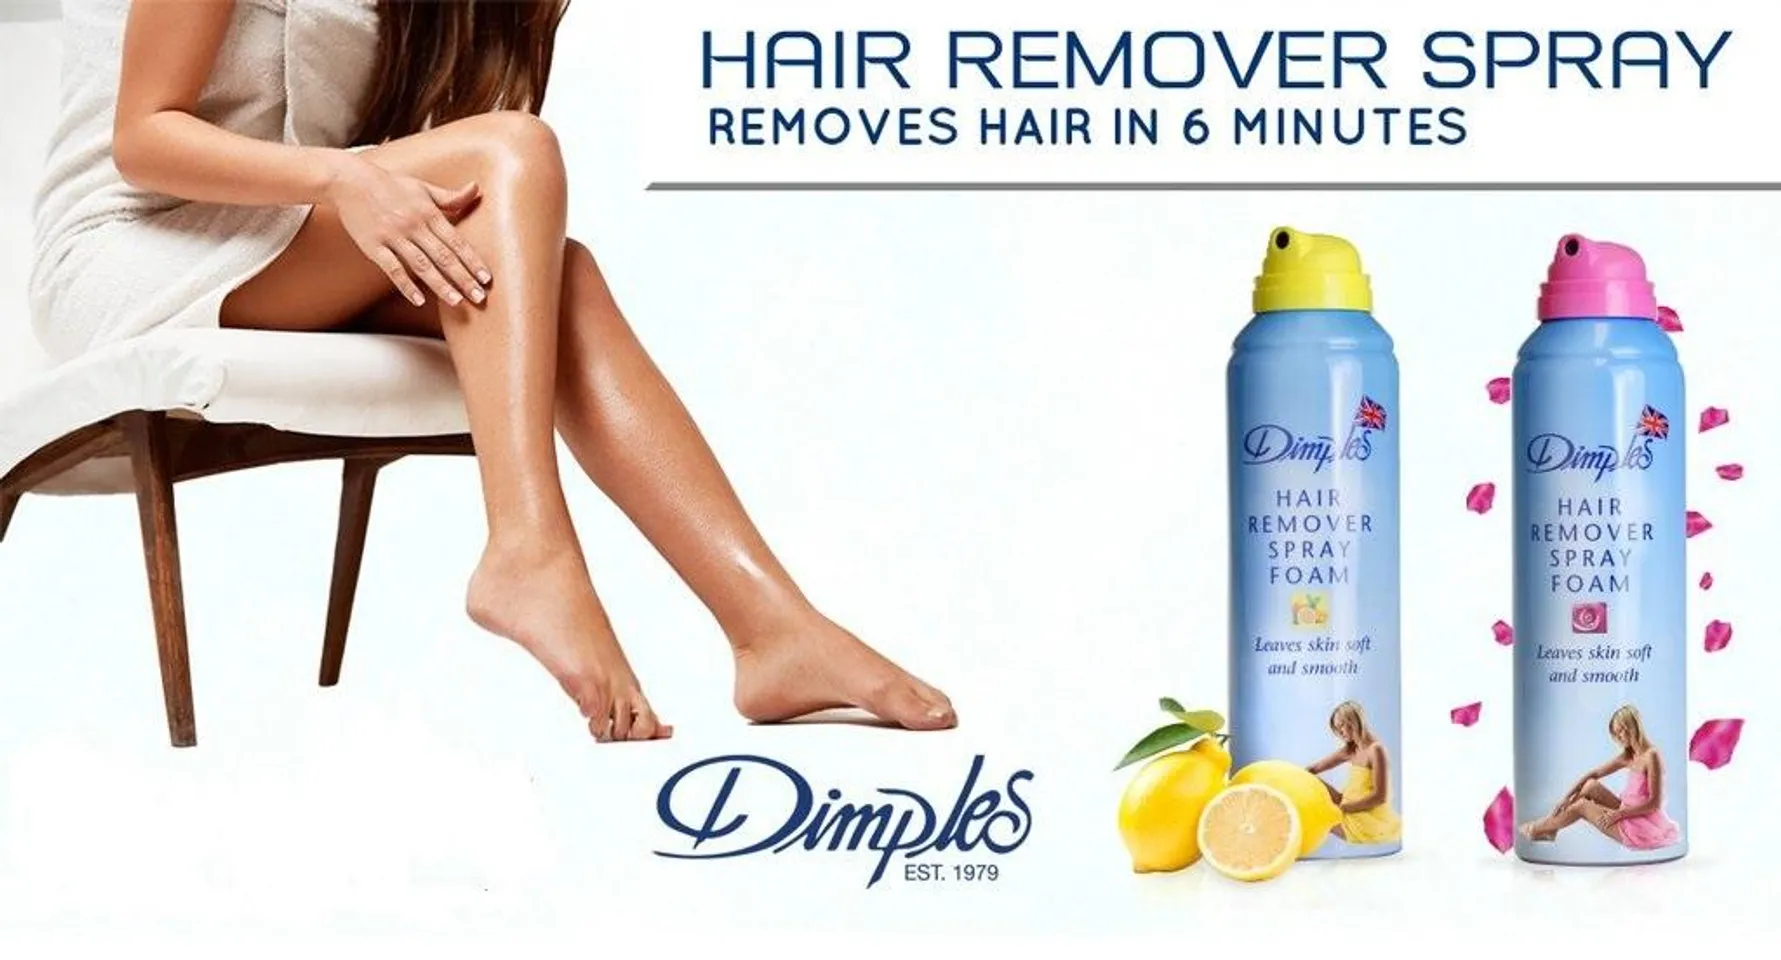 Kem tẩy lông Dimple Hair Removal Spray Foam  làm sạch hiệu quả    